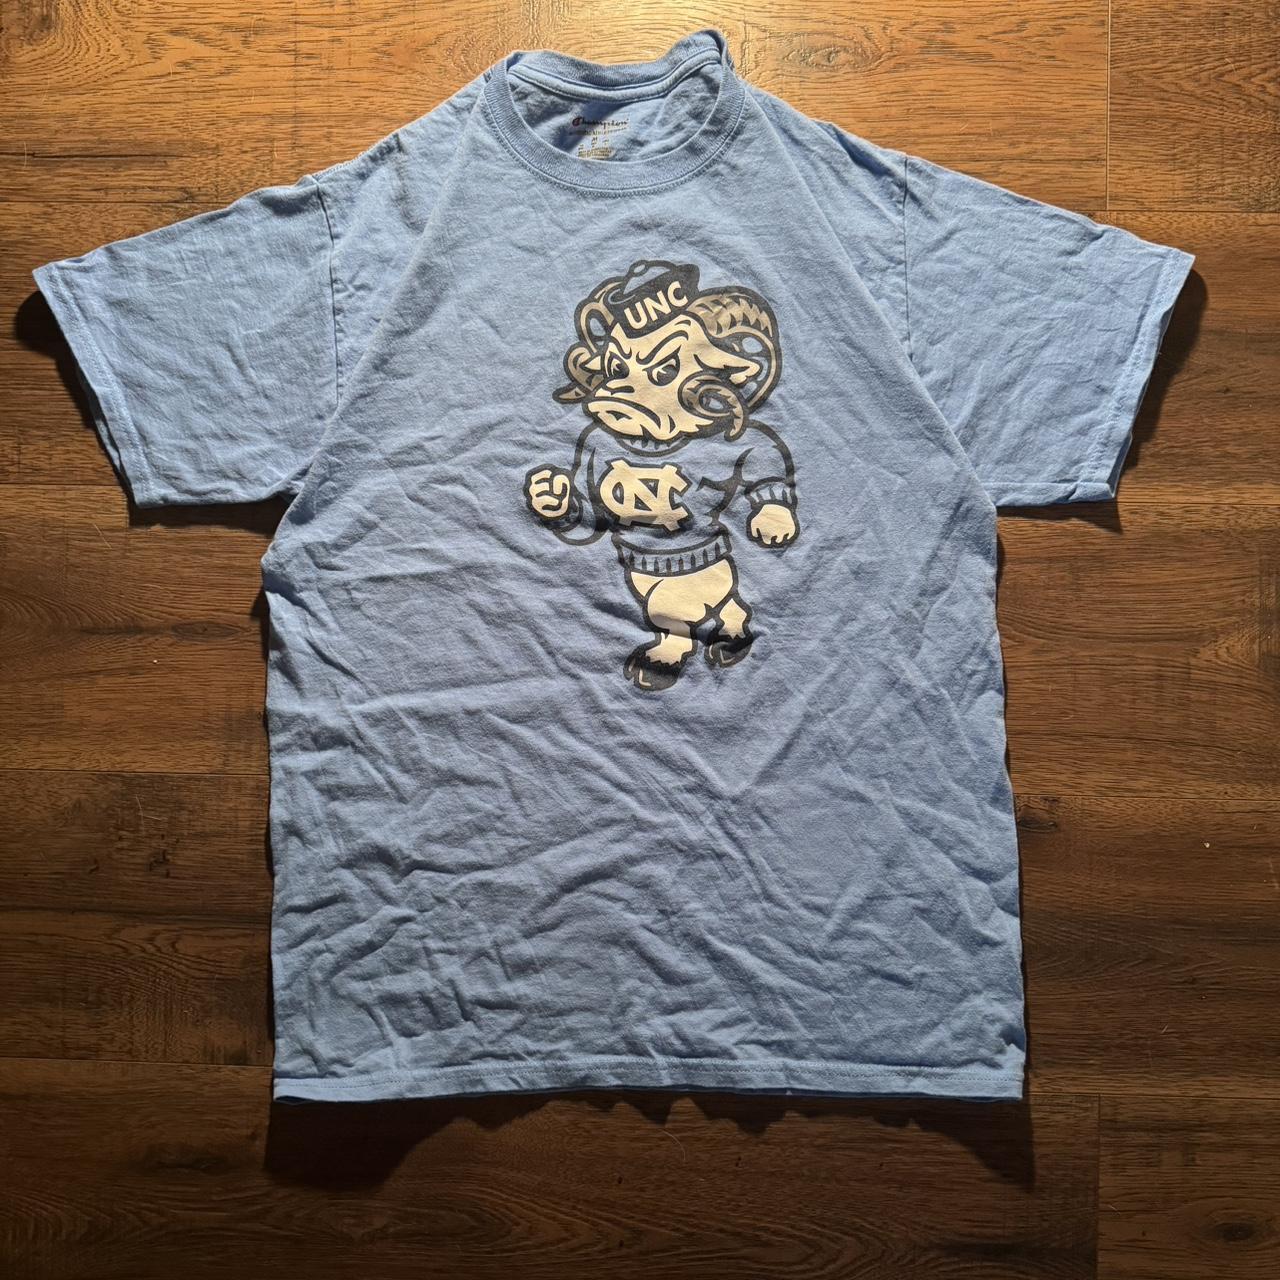 UNC T-Shirt Details - + Size Medium + Great... - Depop